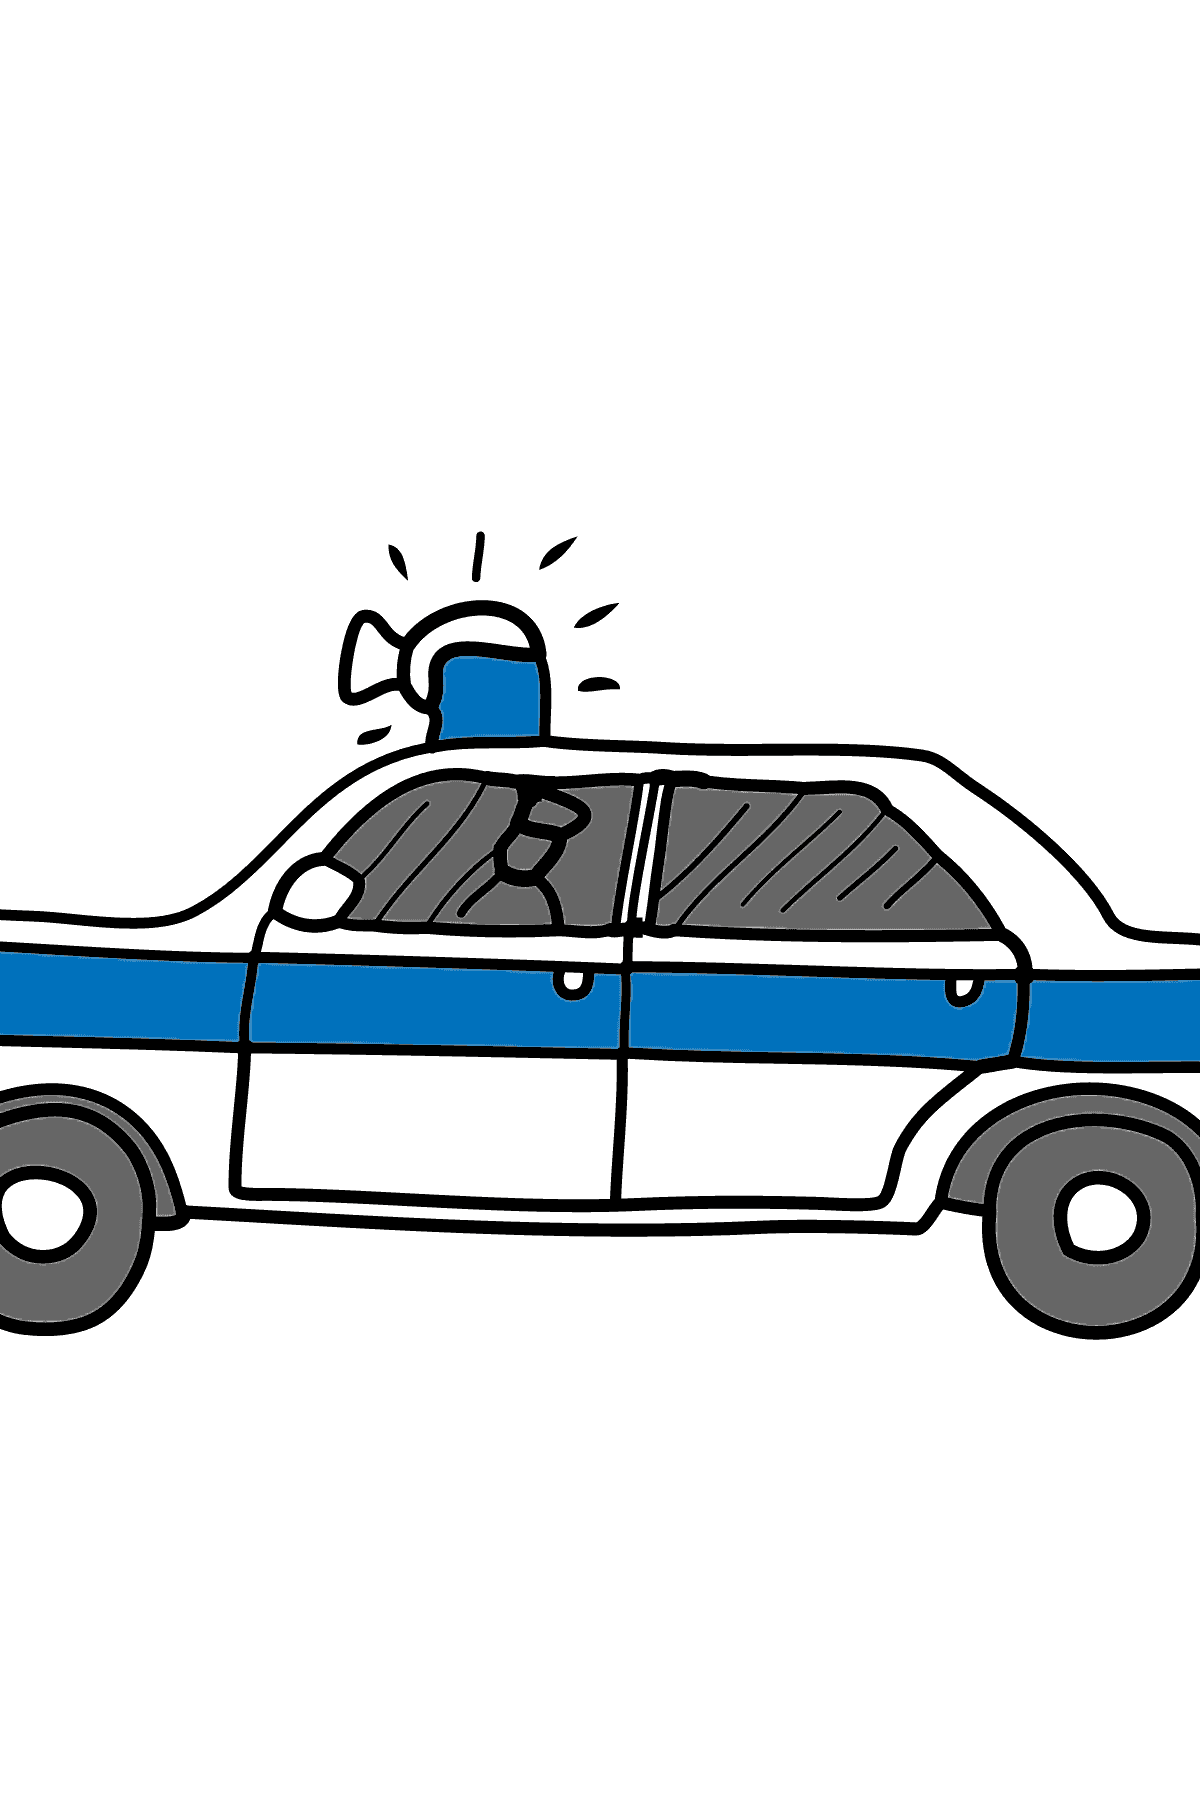 Dibujo para Colorear - Una Patrulla de Policía - Colorear para Niños